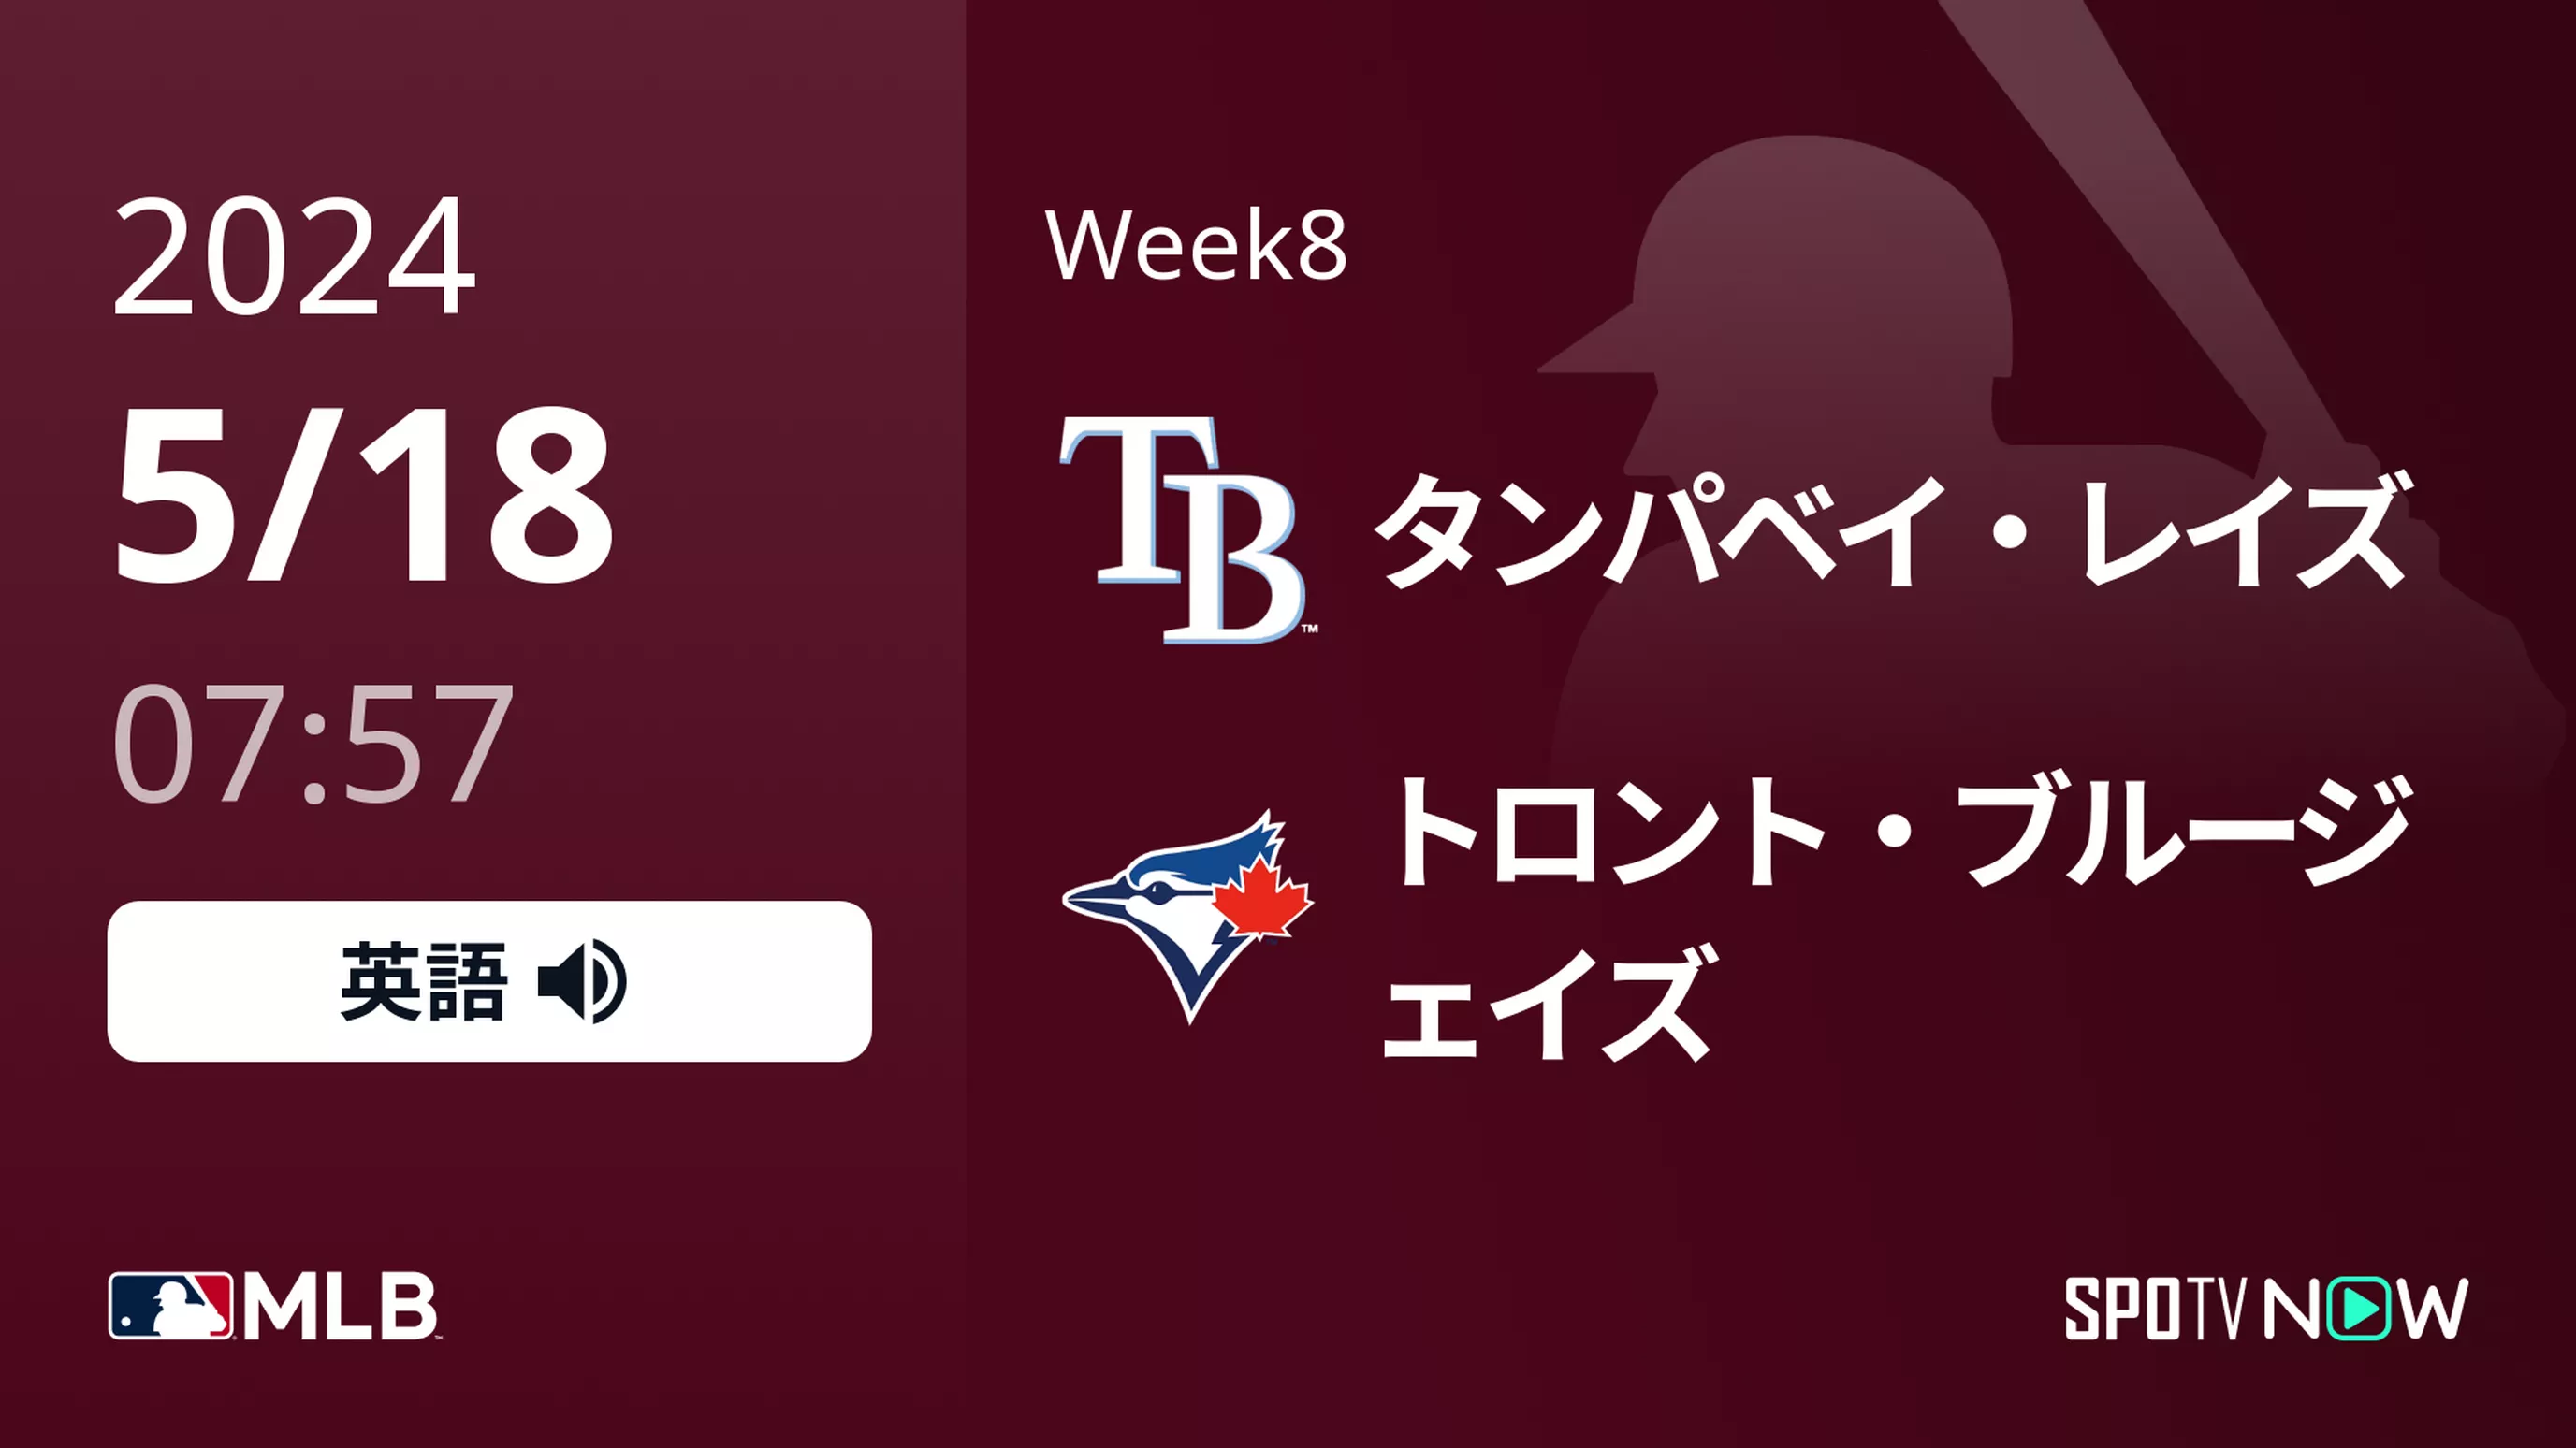 Week8 レイズ vs ブルージェイズ 5/18[MLB]